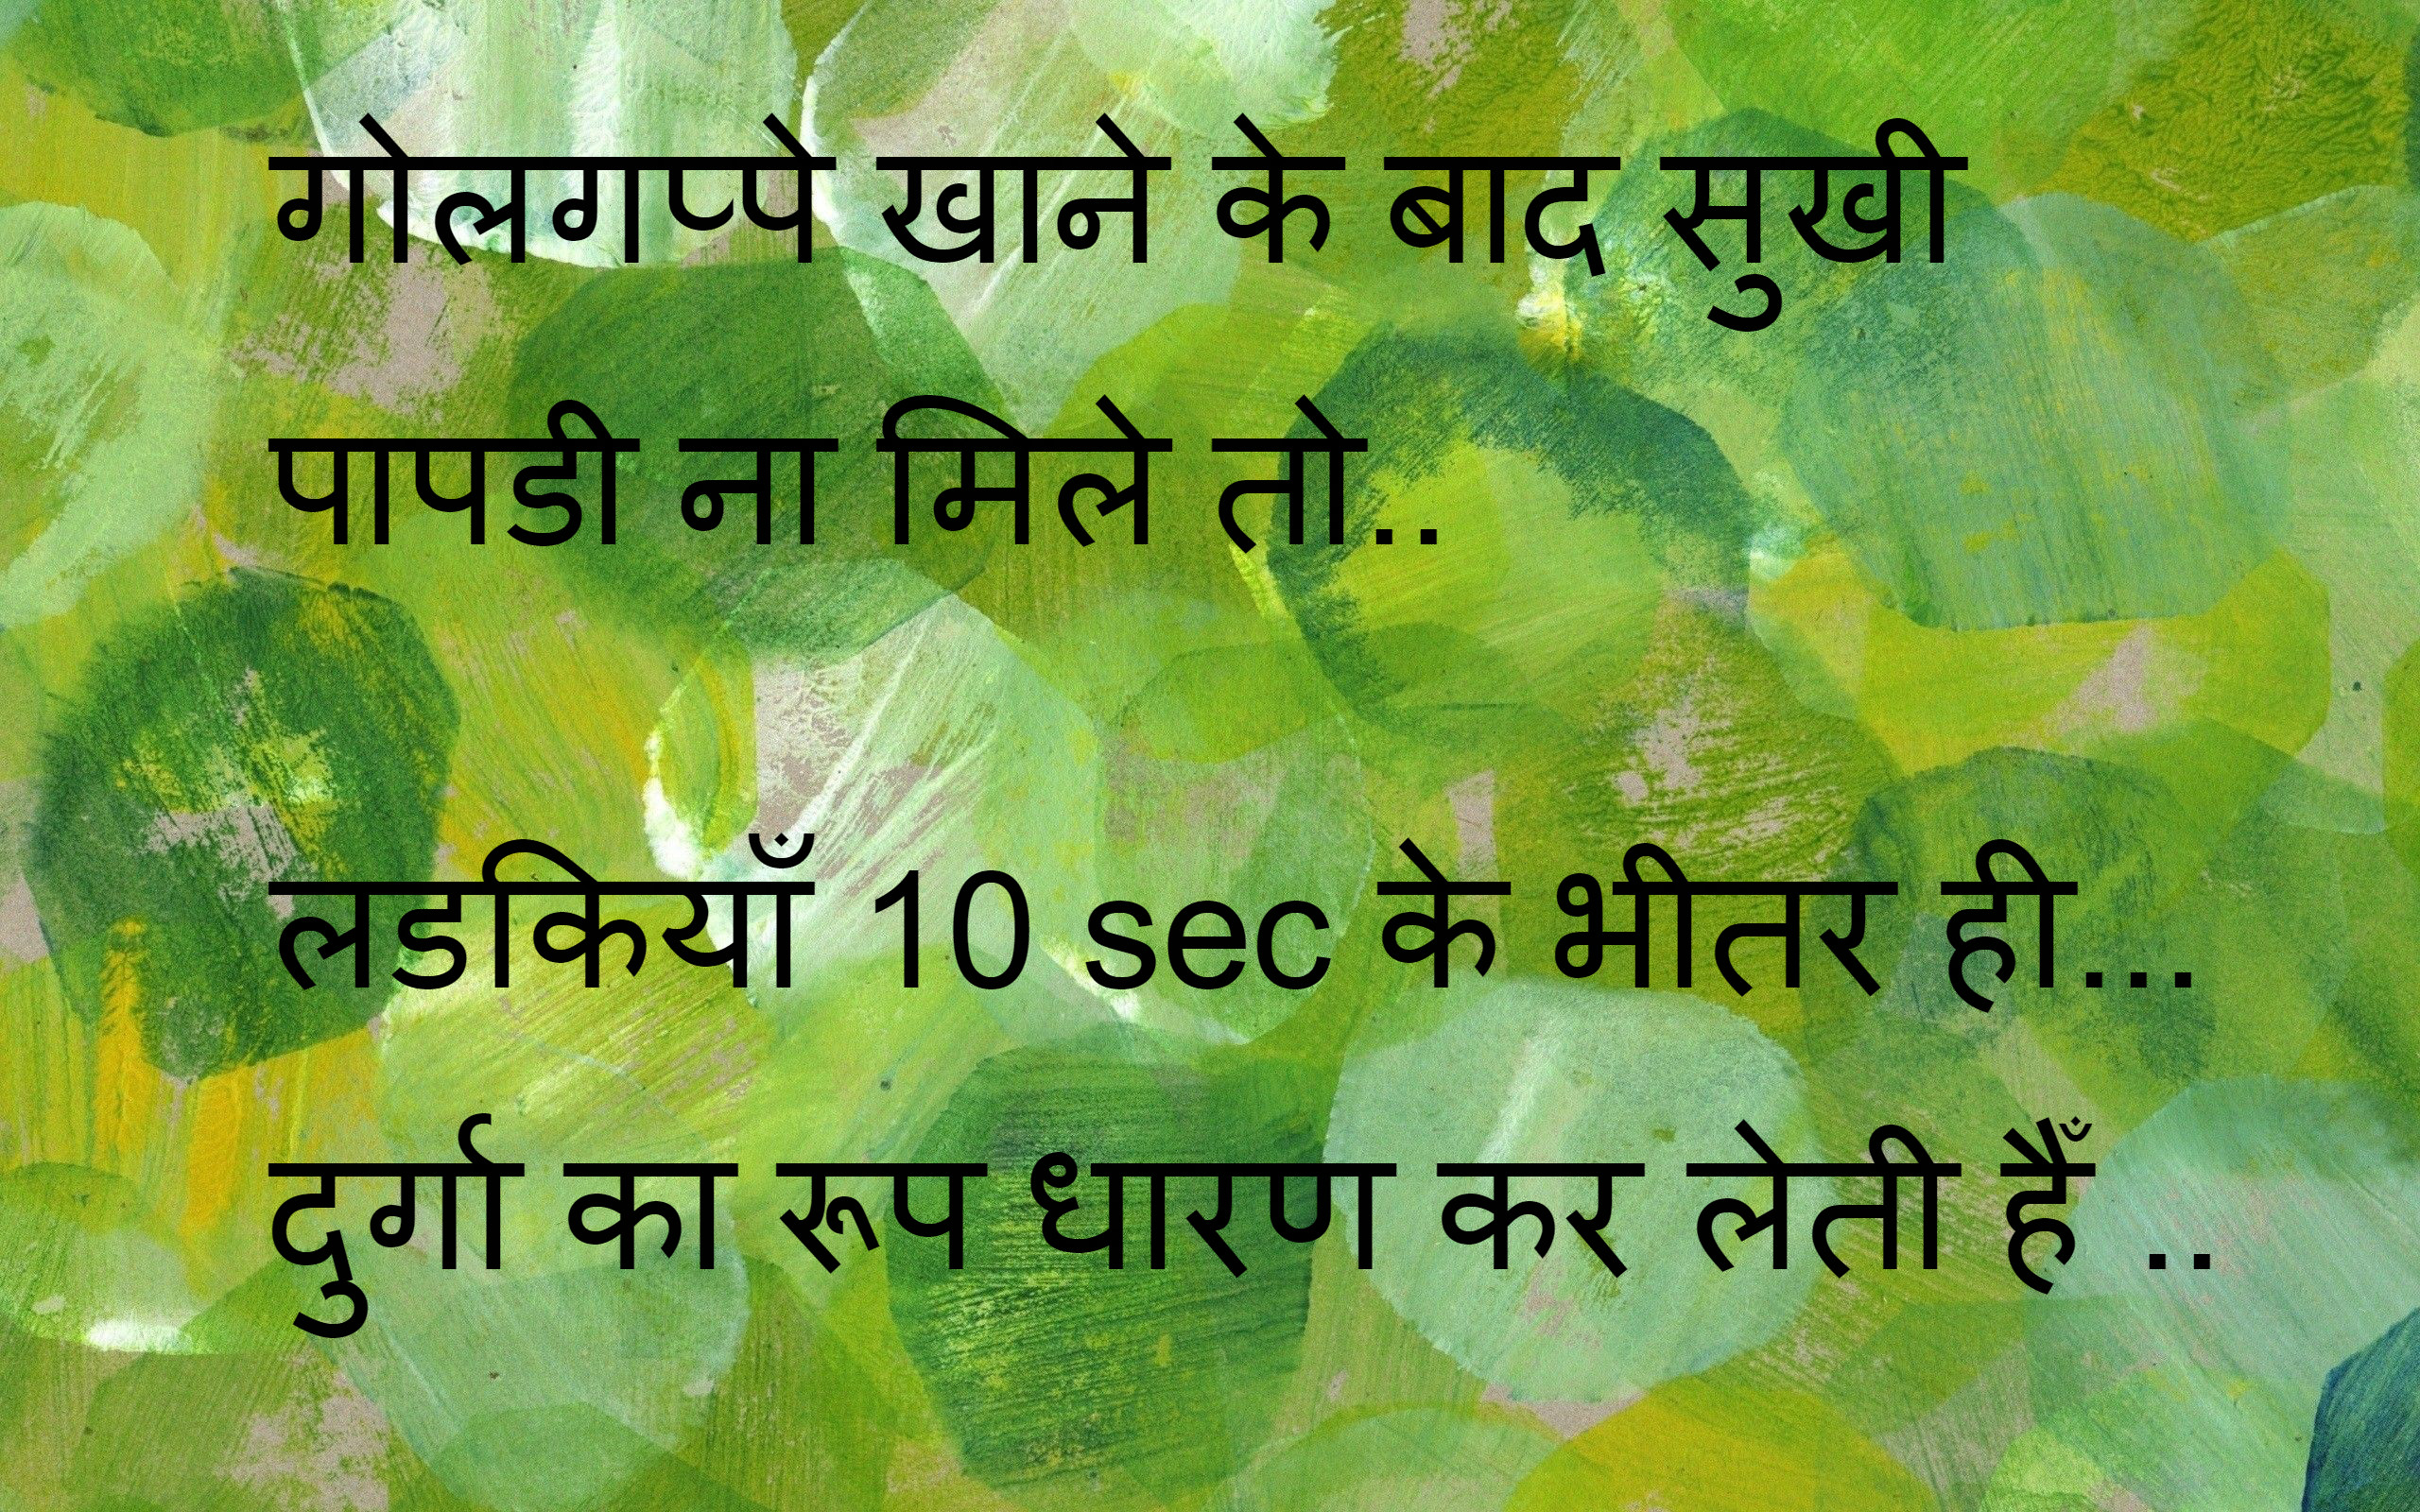 Funny shayari sms in hindi image 2016 | shayariurduimage